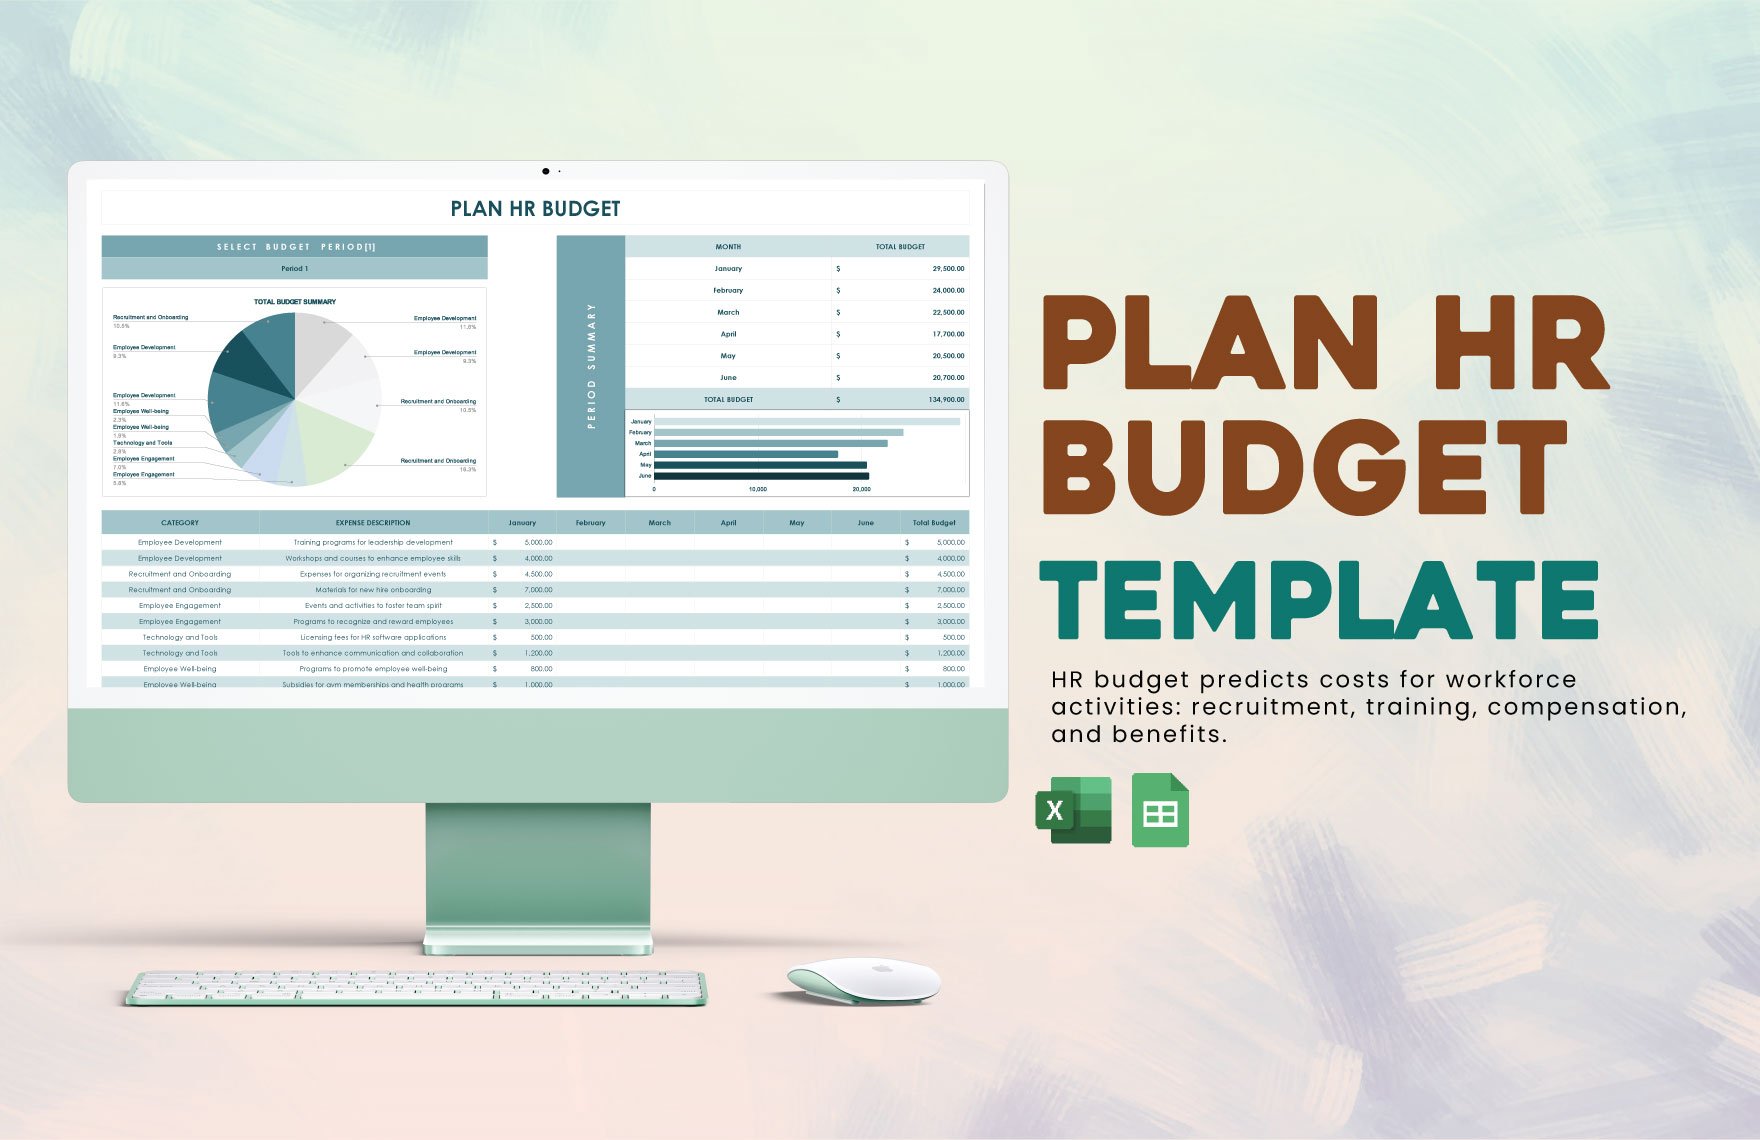 Plan HR Budget Template